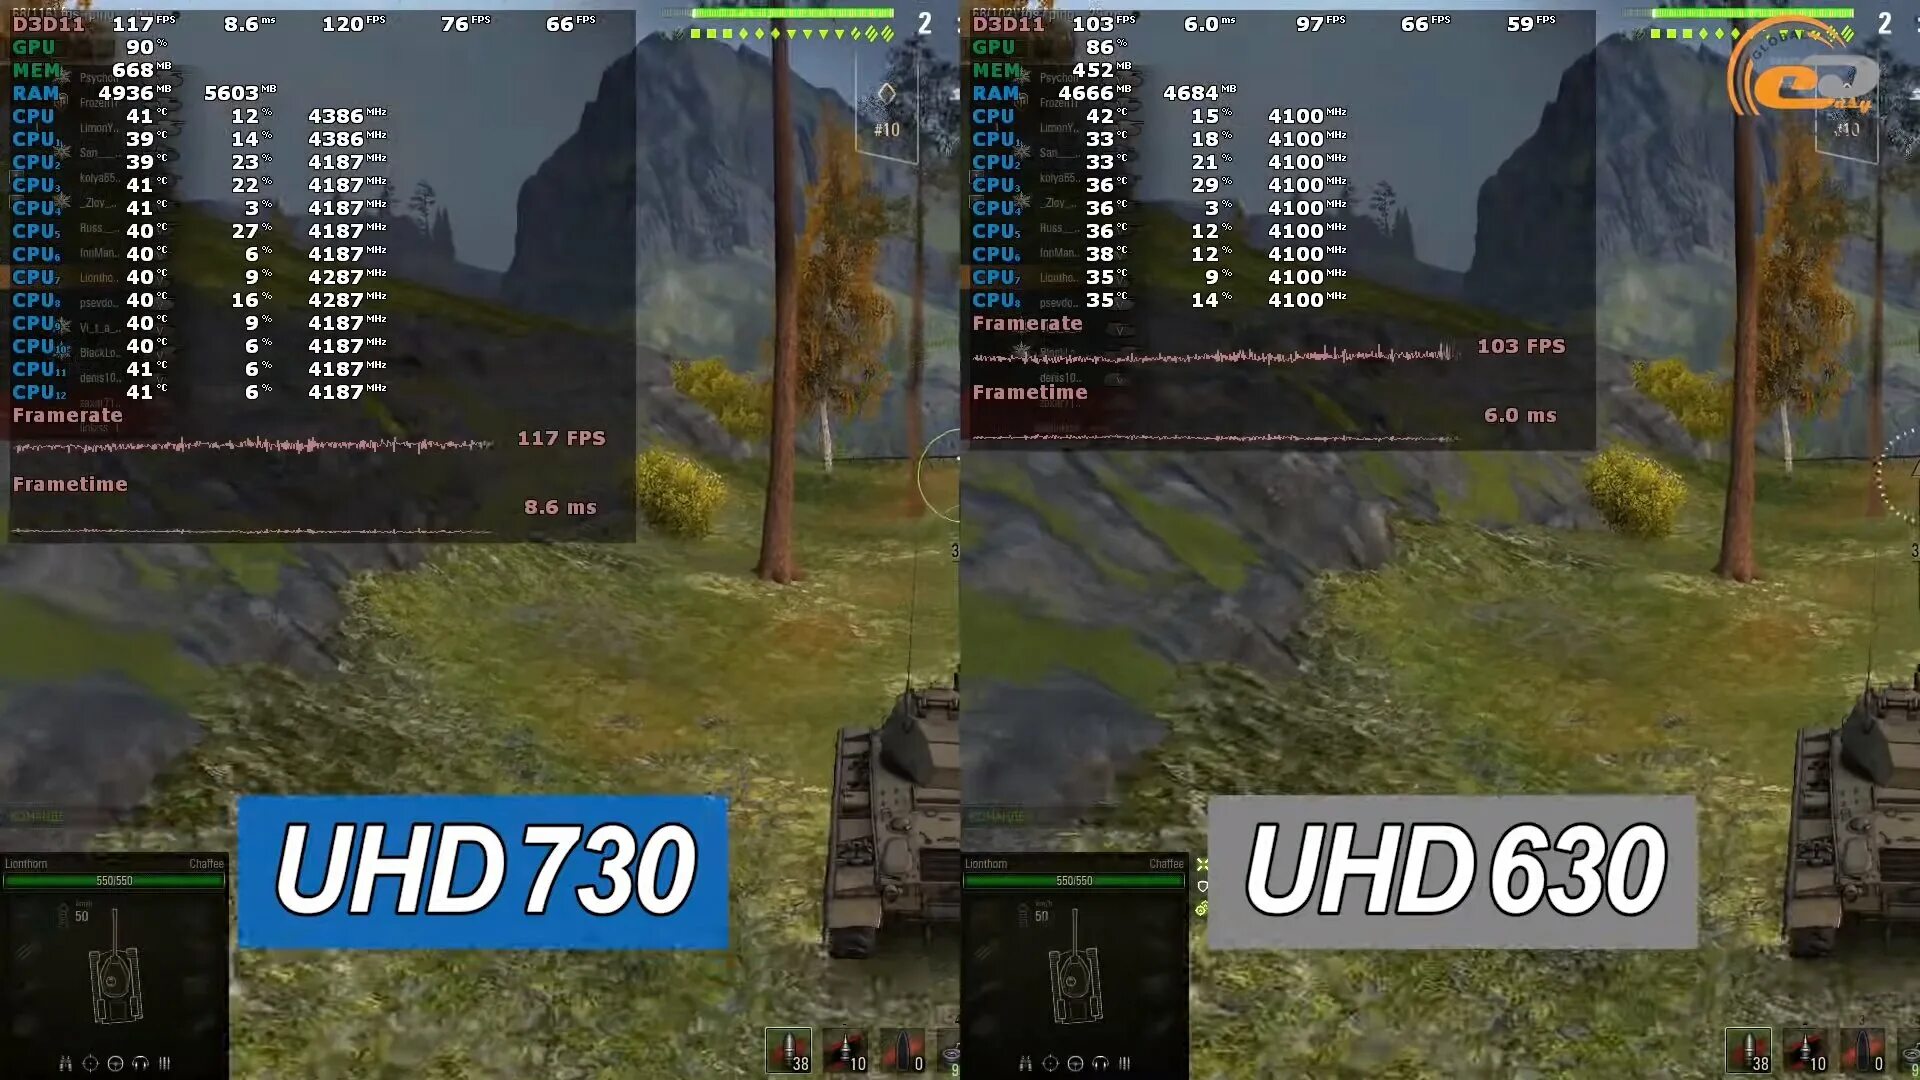 Uhd graphics 630. Intel HD Graphics 730 видеокарта. Intel UHD Graphics 630 видеокарта. UHD Graphics 730. UHD 730 vs 1030.